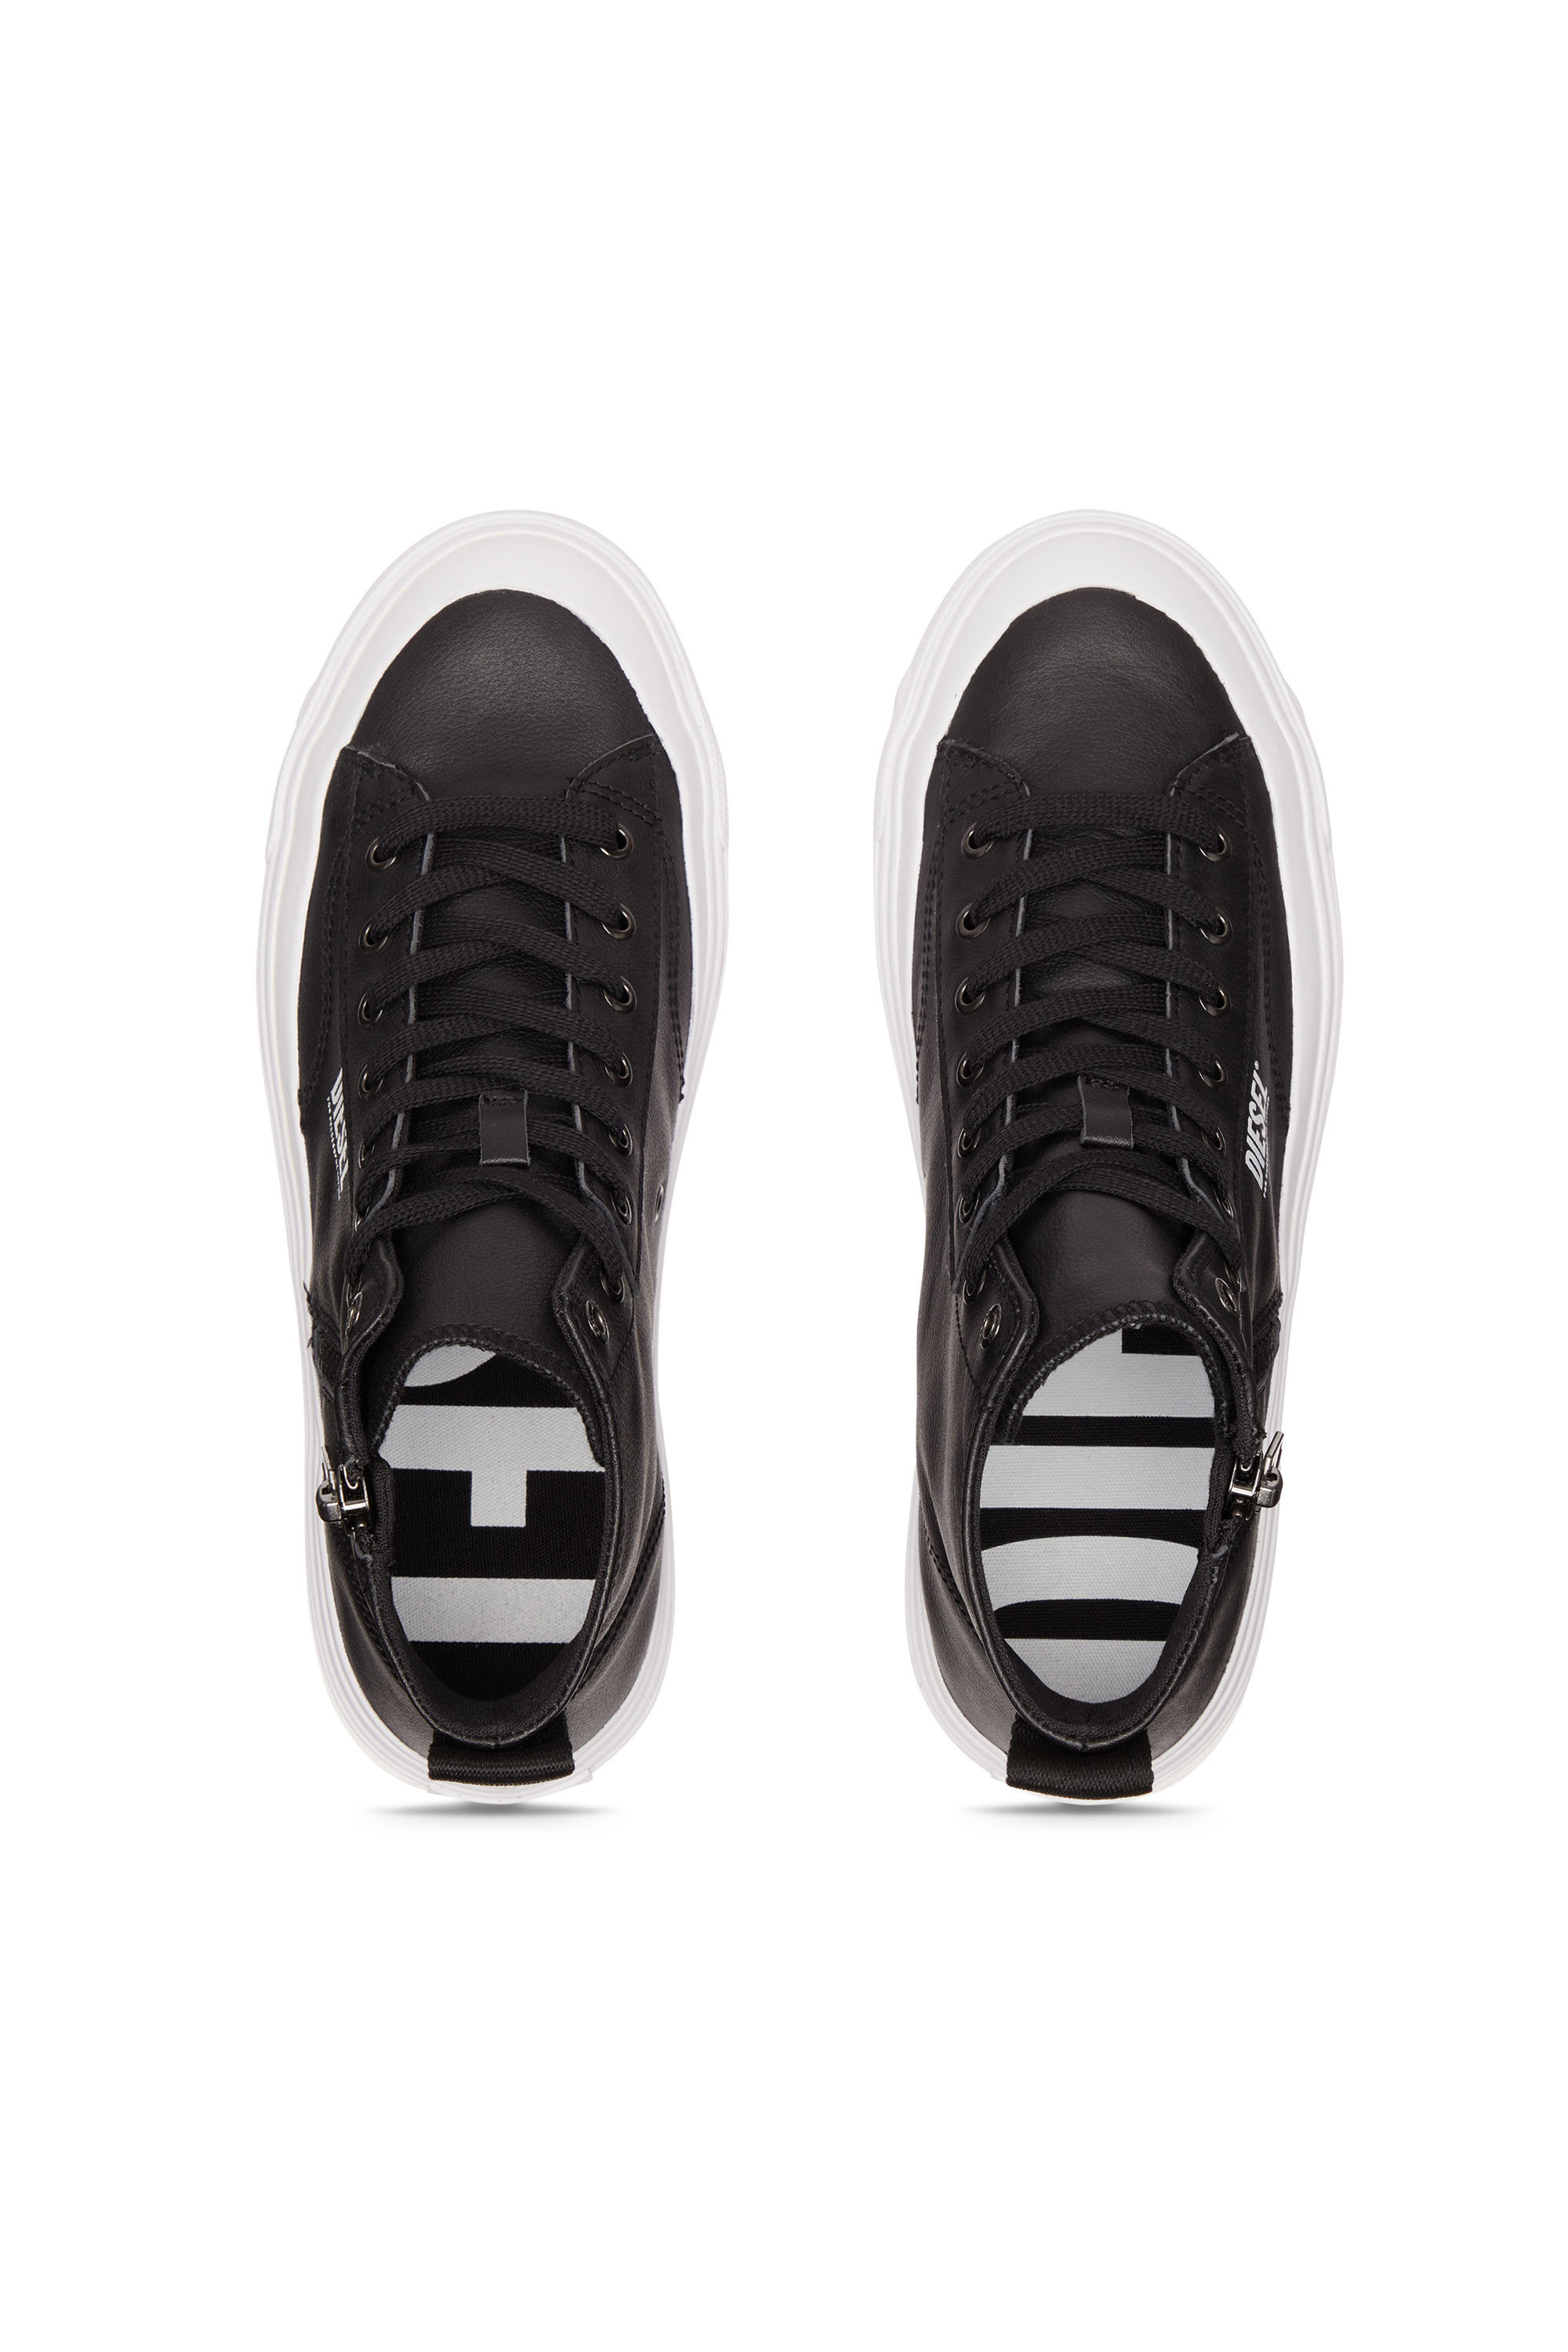 Diesel - S-ATHOS DV MID, Man S-Athos Dv Mid - High-top sneakers with side zip in Black - Image 5